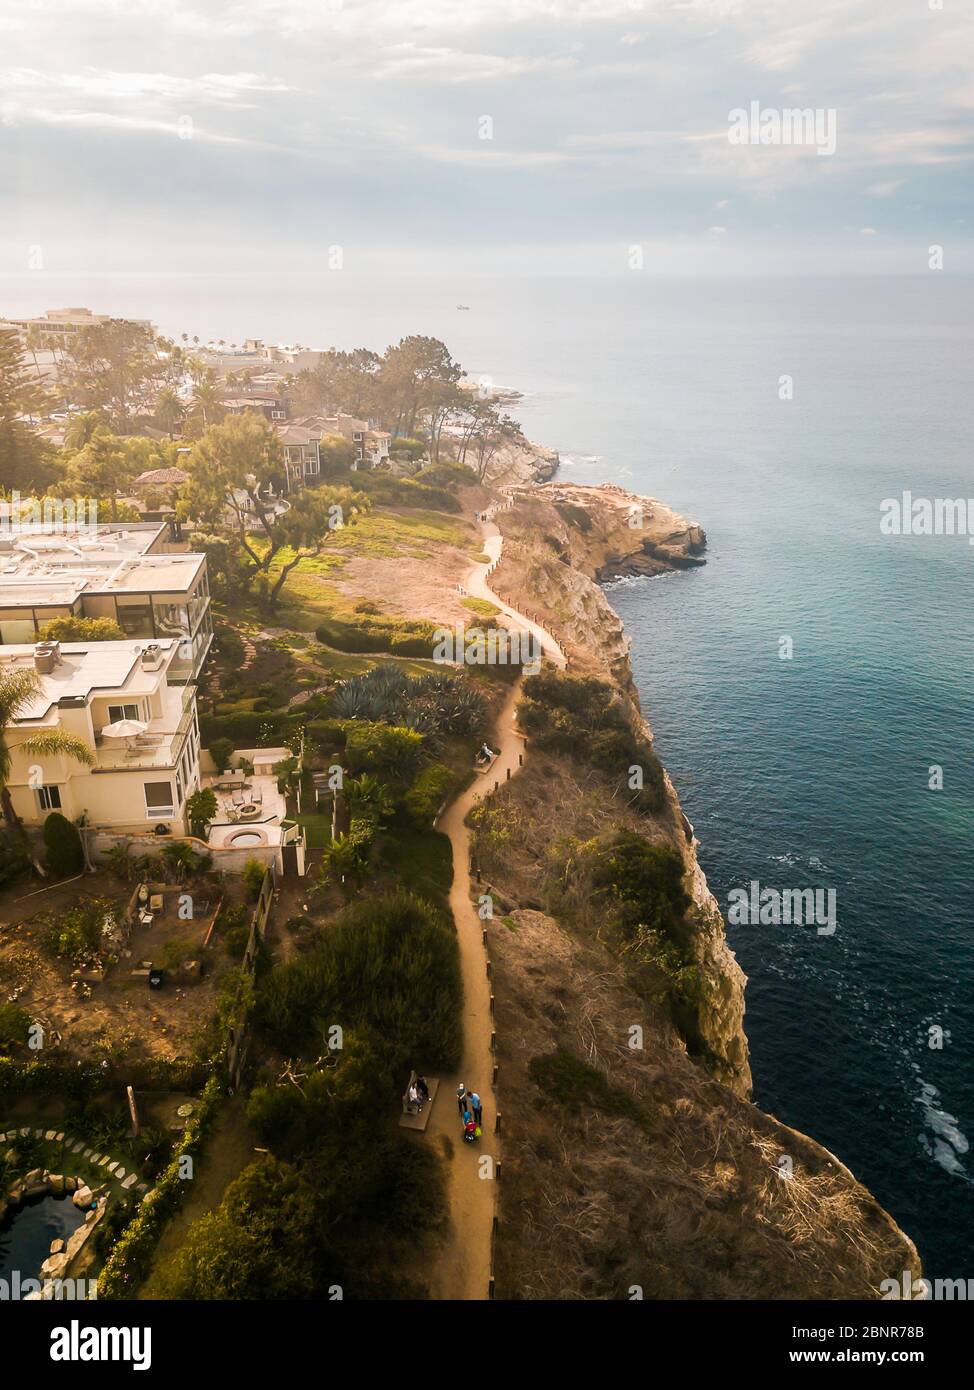 Vue aérienne du village ensoleillé de la Jolla en Californie de San Diego avec des maisons sur les falaises de l'océan Pacifique Banque D'Images